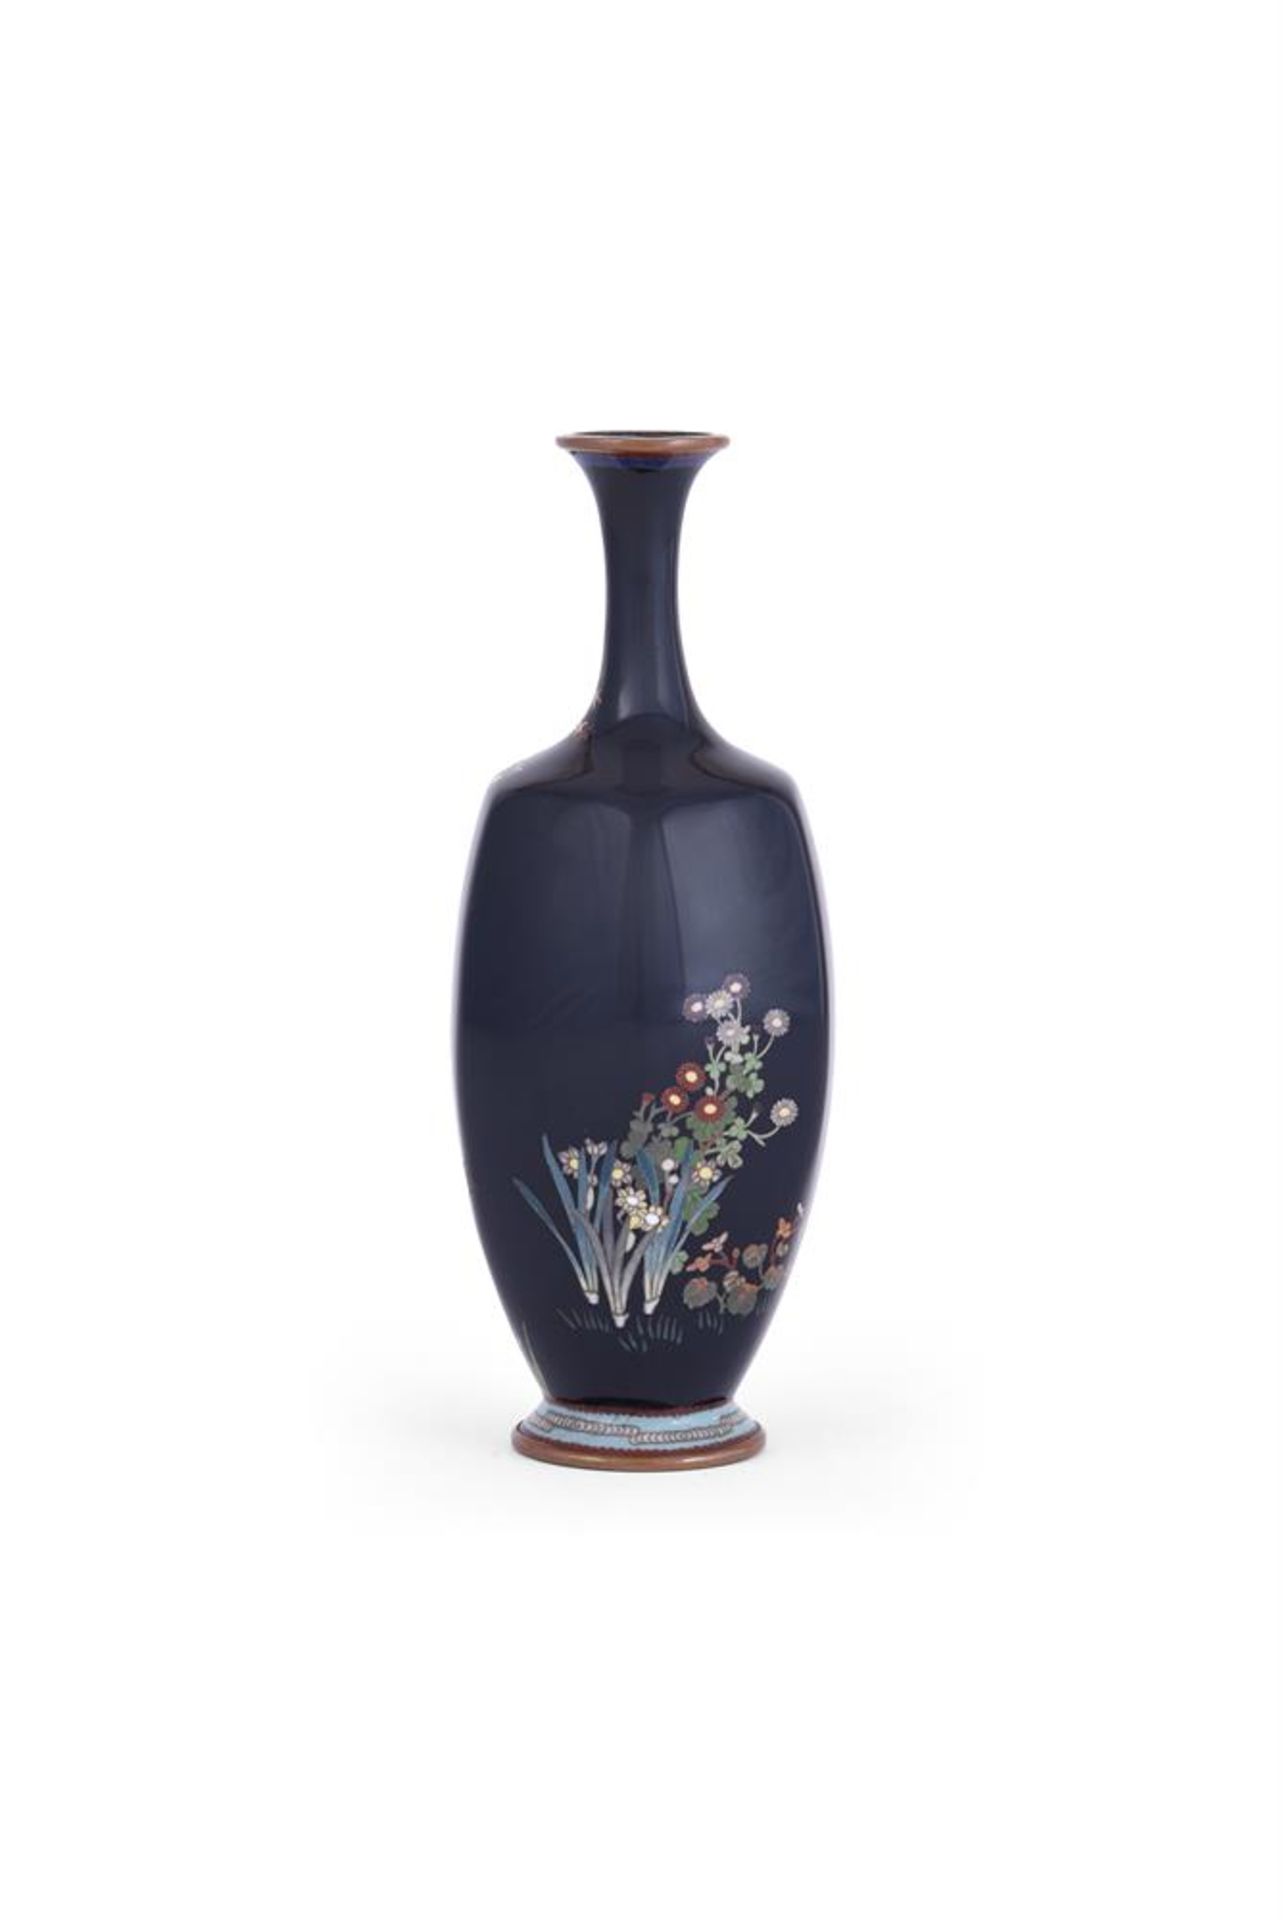 Adachi Kinjiro: A Japanese Cloisonné Enamel Vase - Image 3 of 5